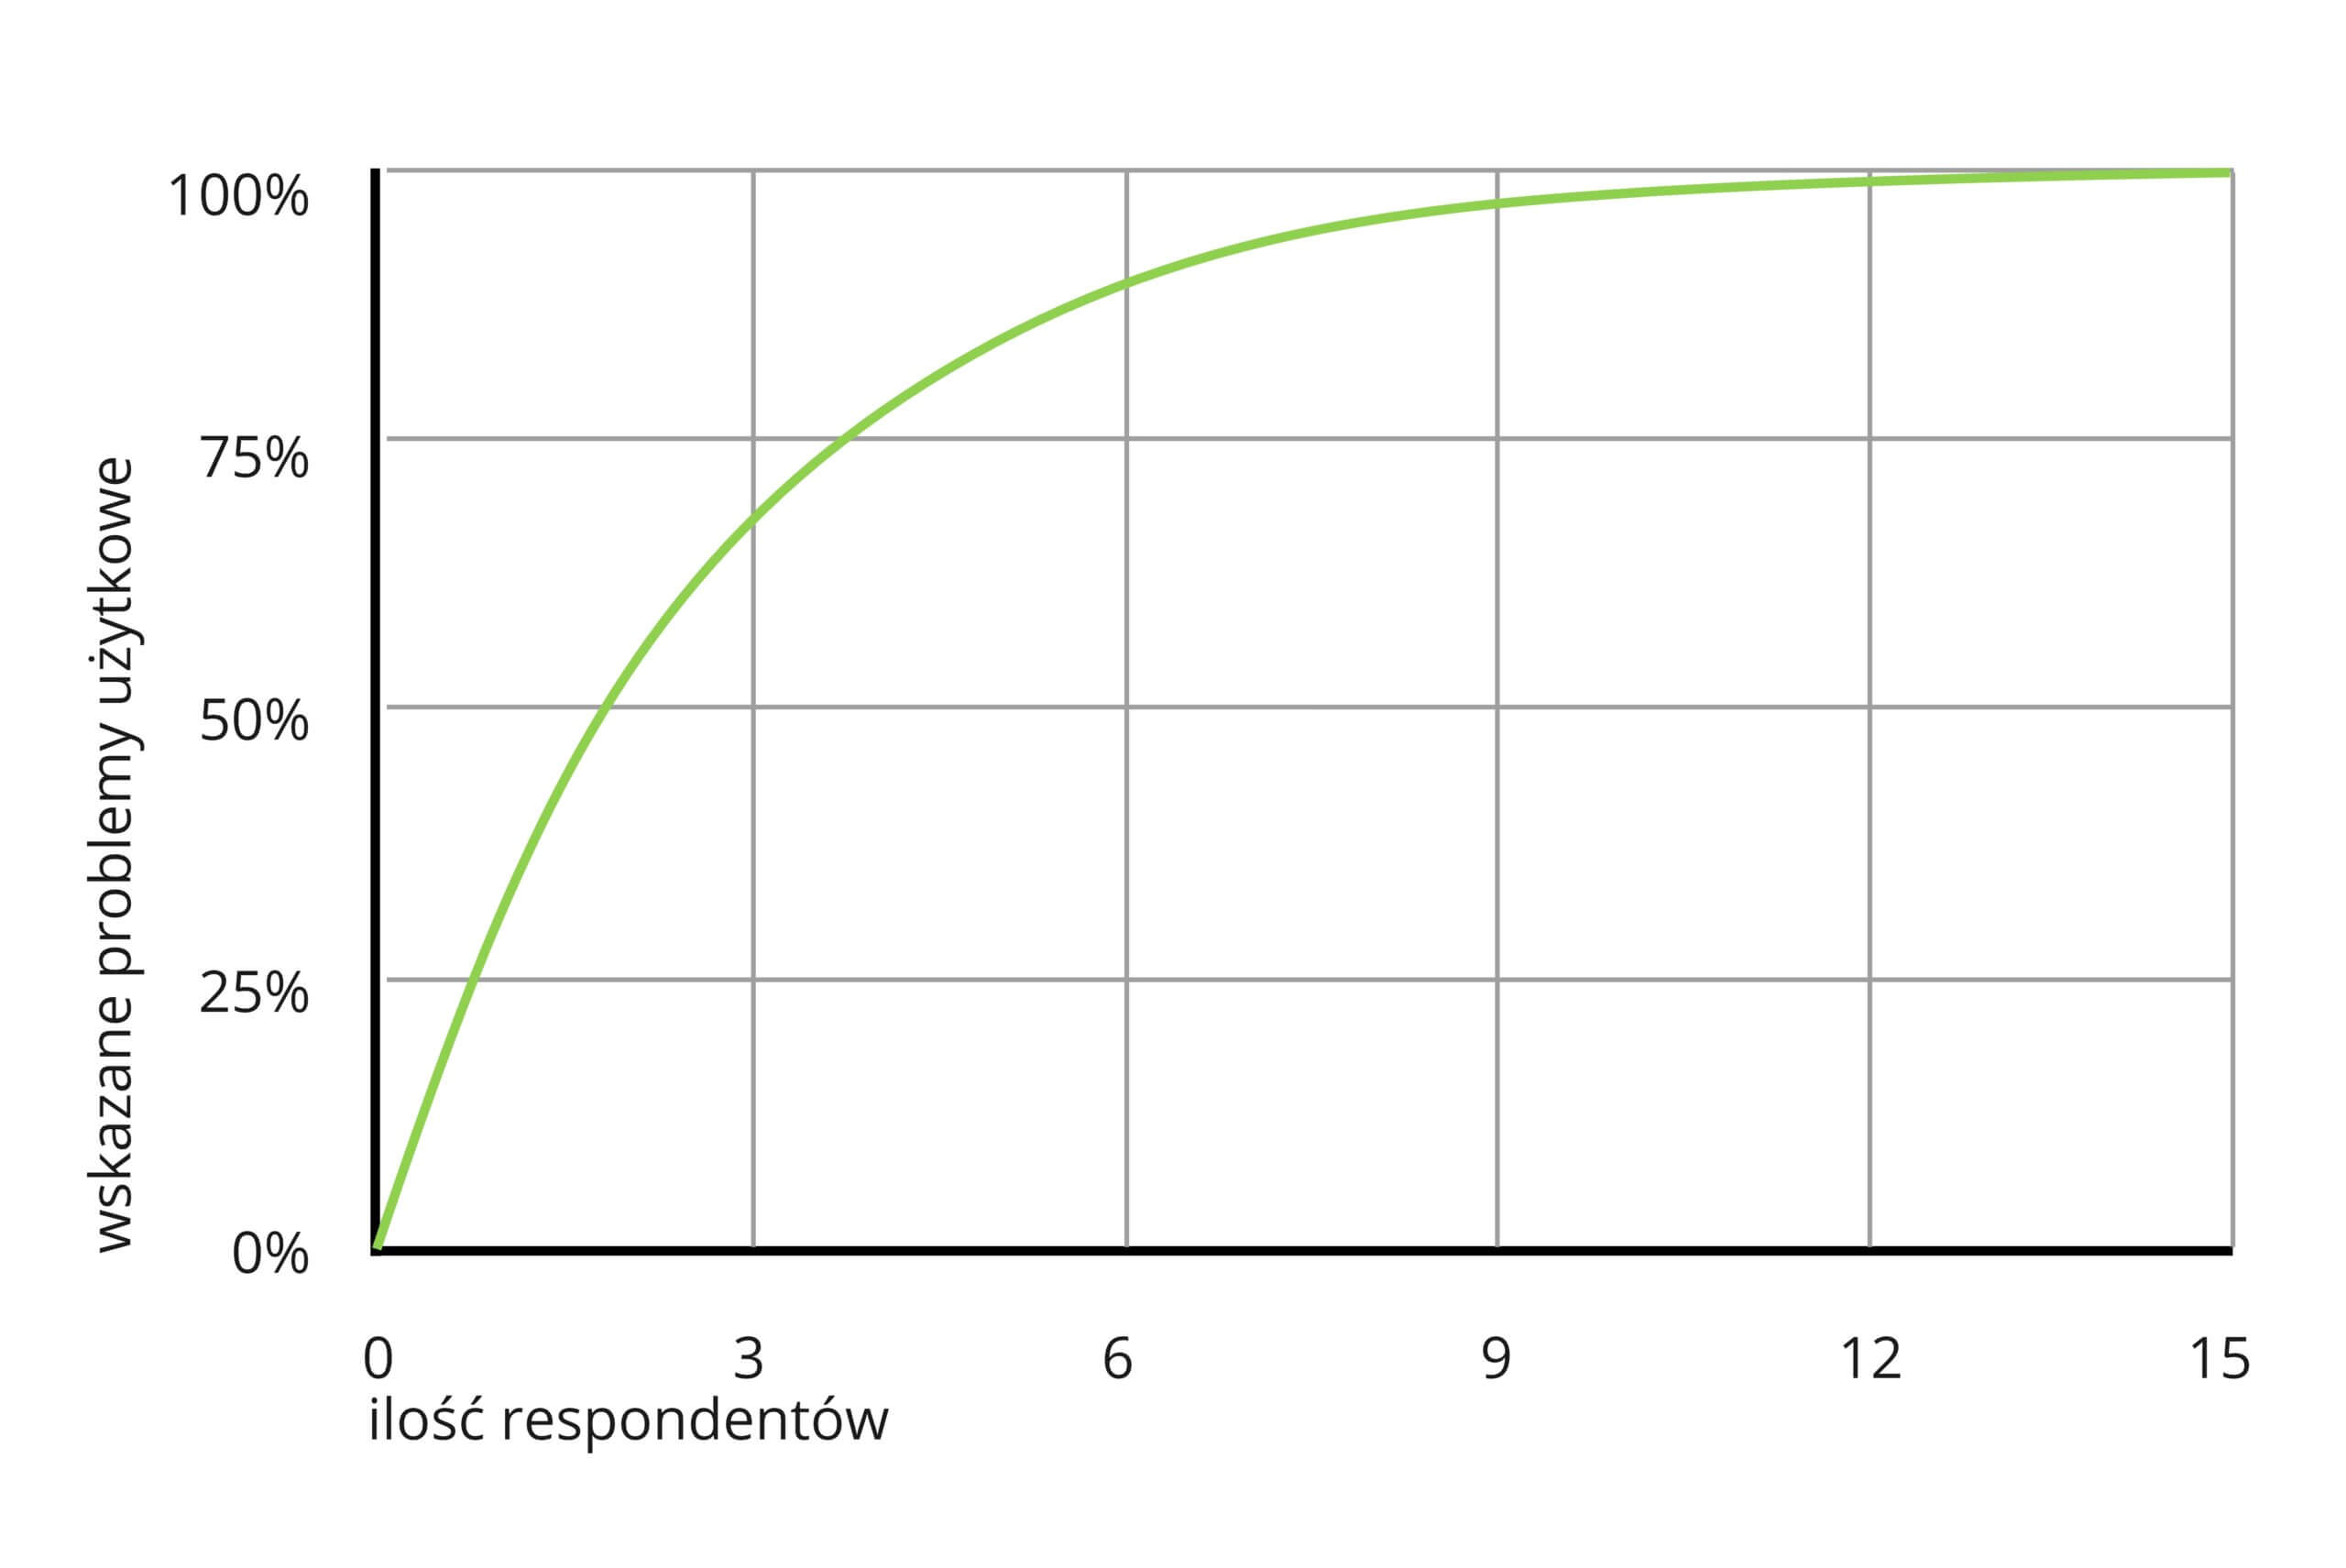 wykres przedstawia zależność ilości wskazanych problemów użytkowych od ilóści respondentów